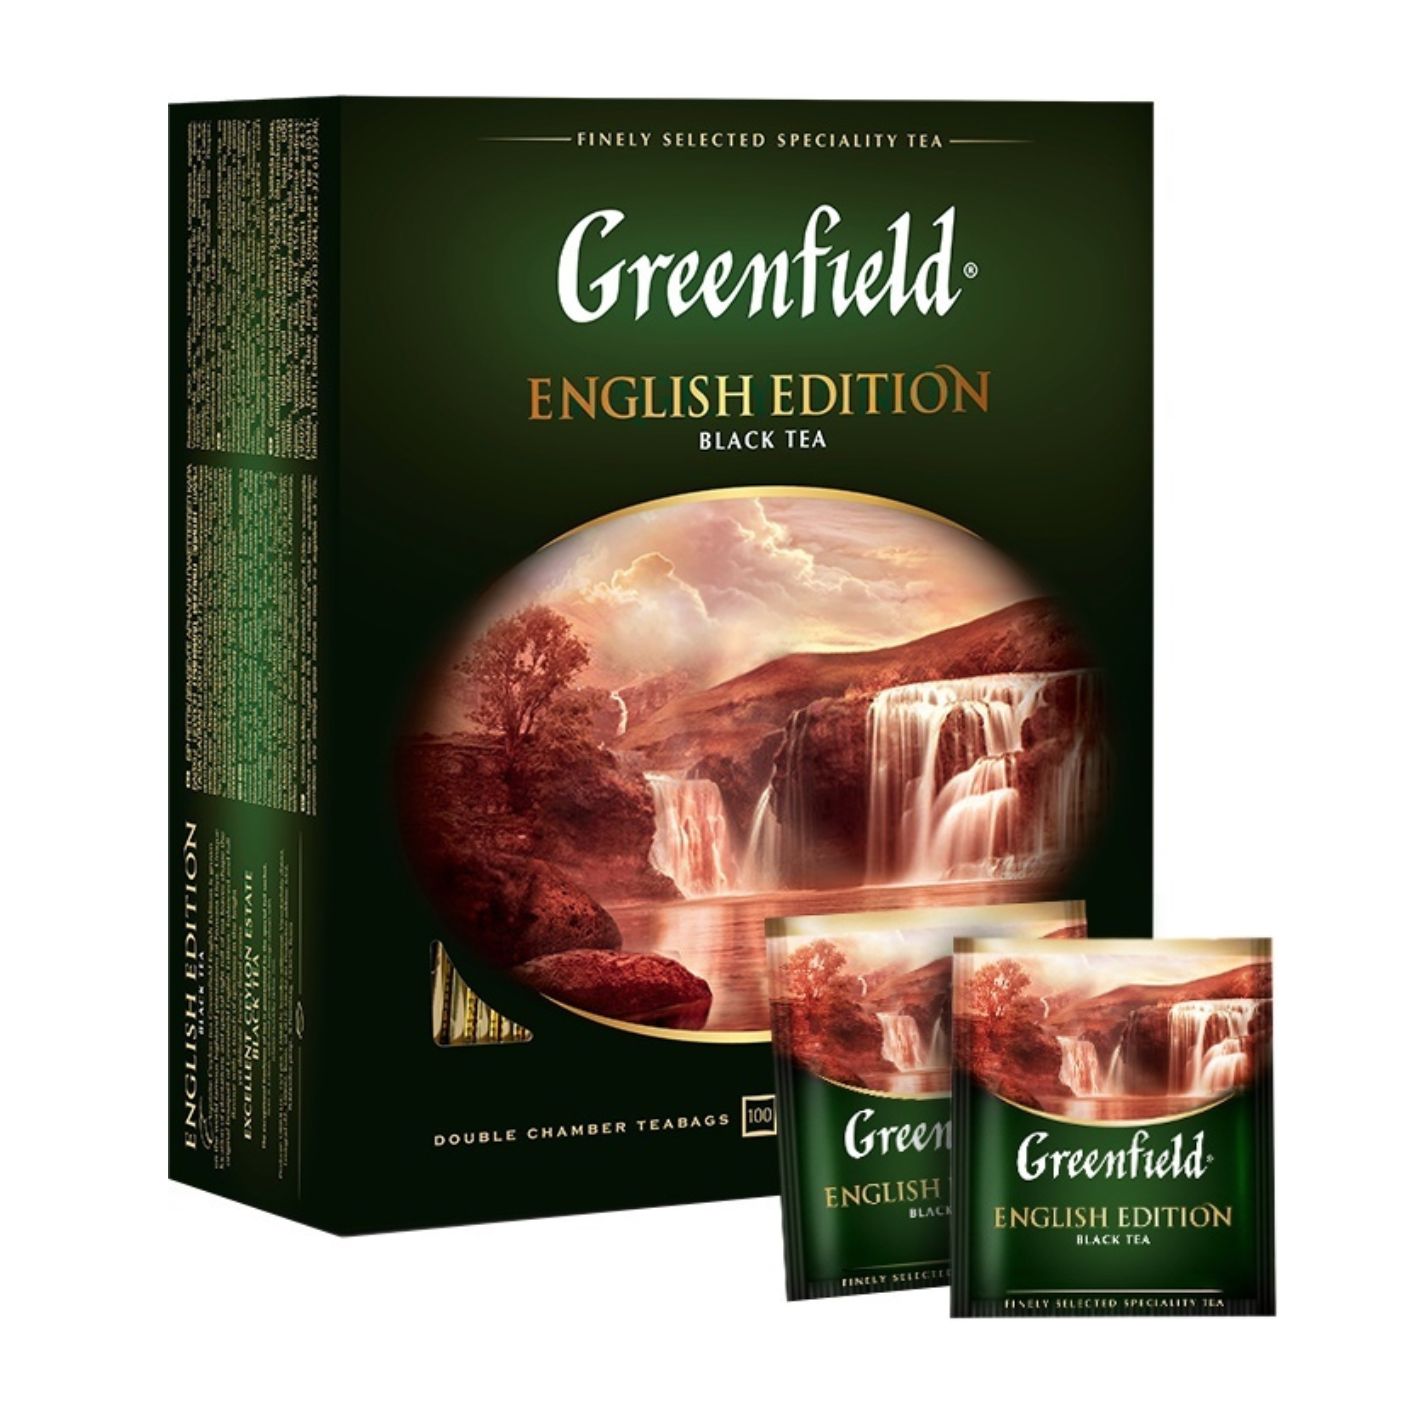 Чай гринфилд в пакетах. Greenfield English Edition чай черный 100 пакетов. Чай Гринфилд черный 100 пакетиков. Чай Гринфилд Инглиш 100 пак. Чай Greenfield English Edition.